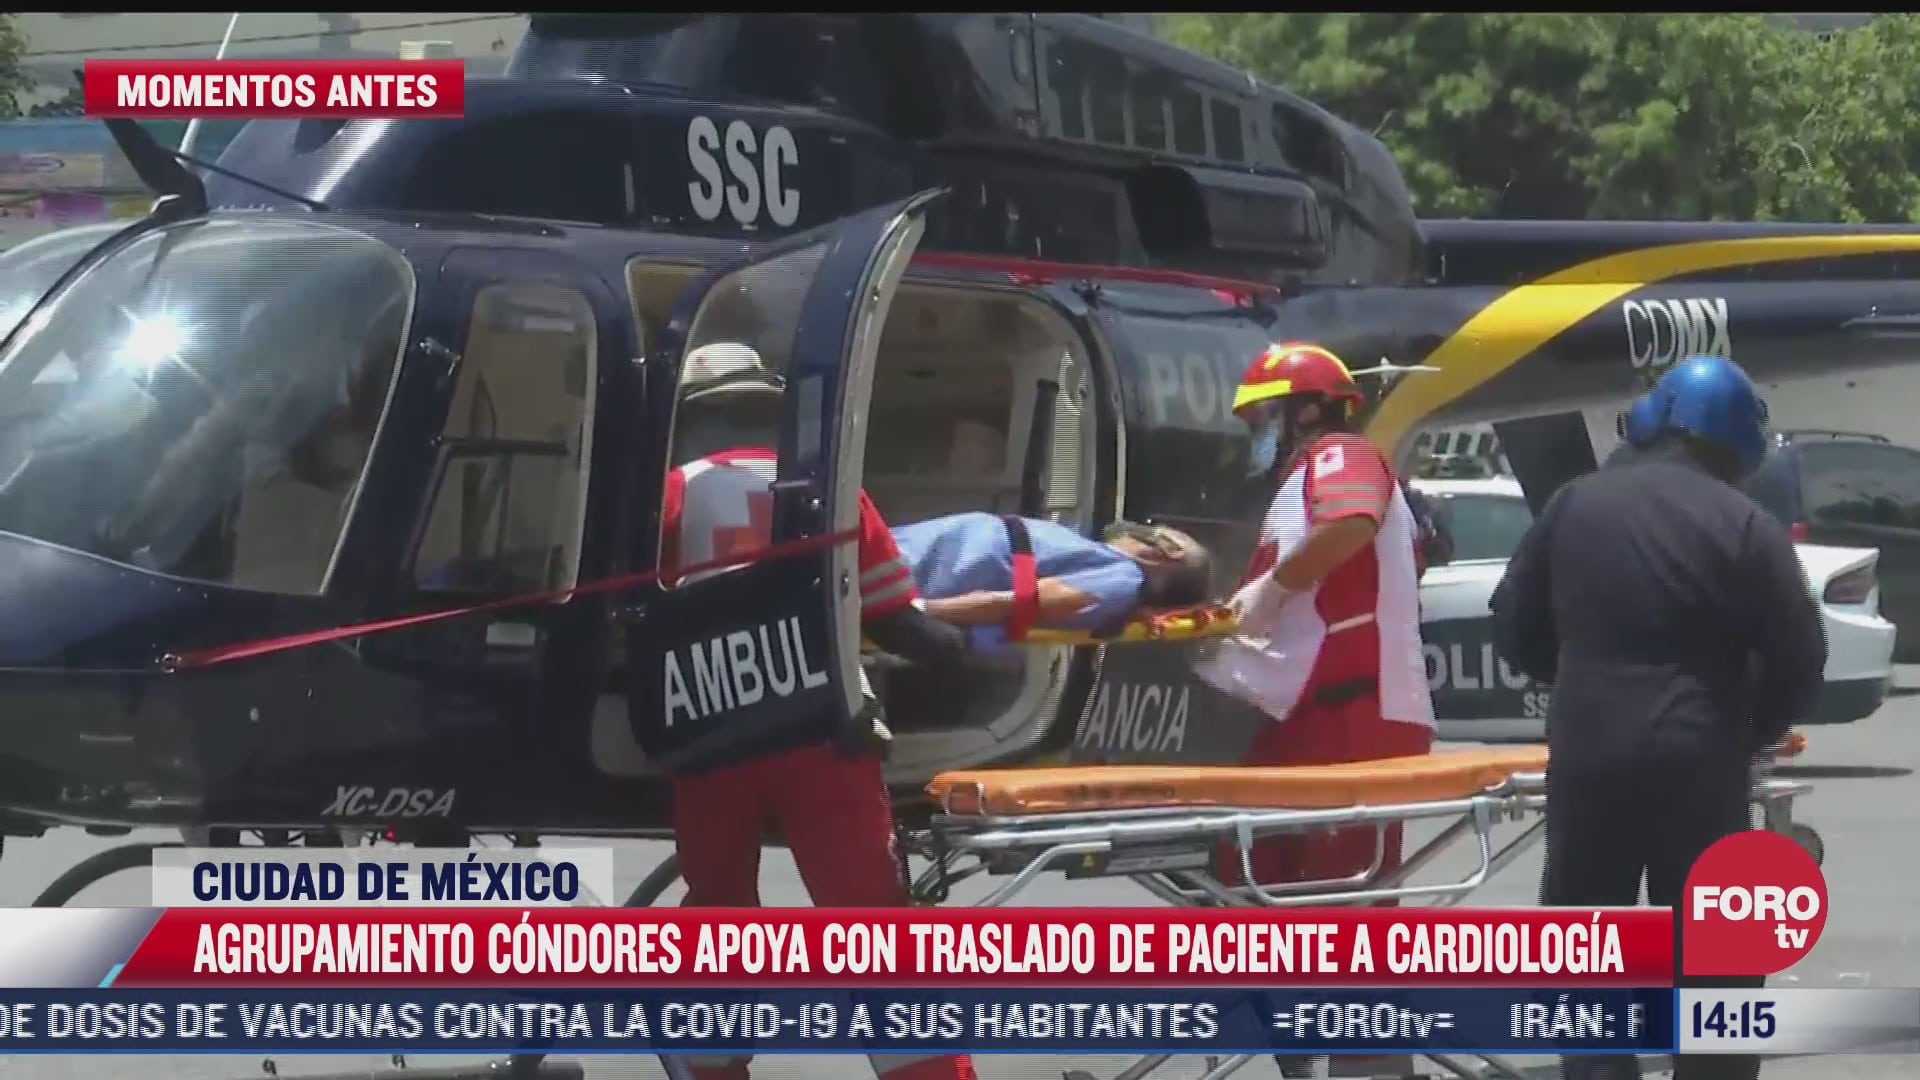 helicoptero de grupo condores apoya a traslado de paciente en cdmx